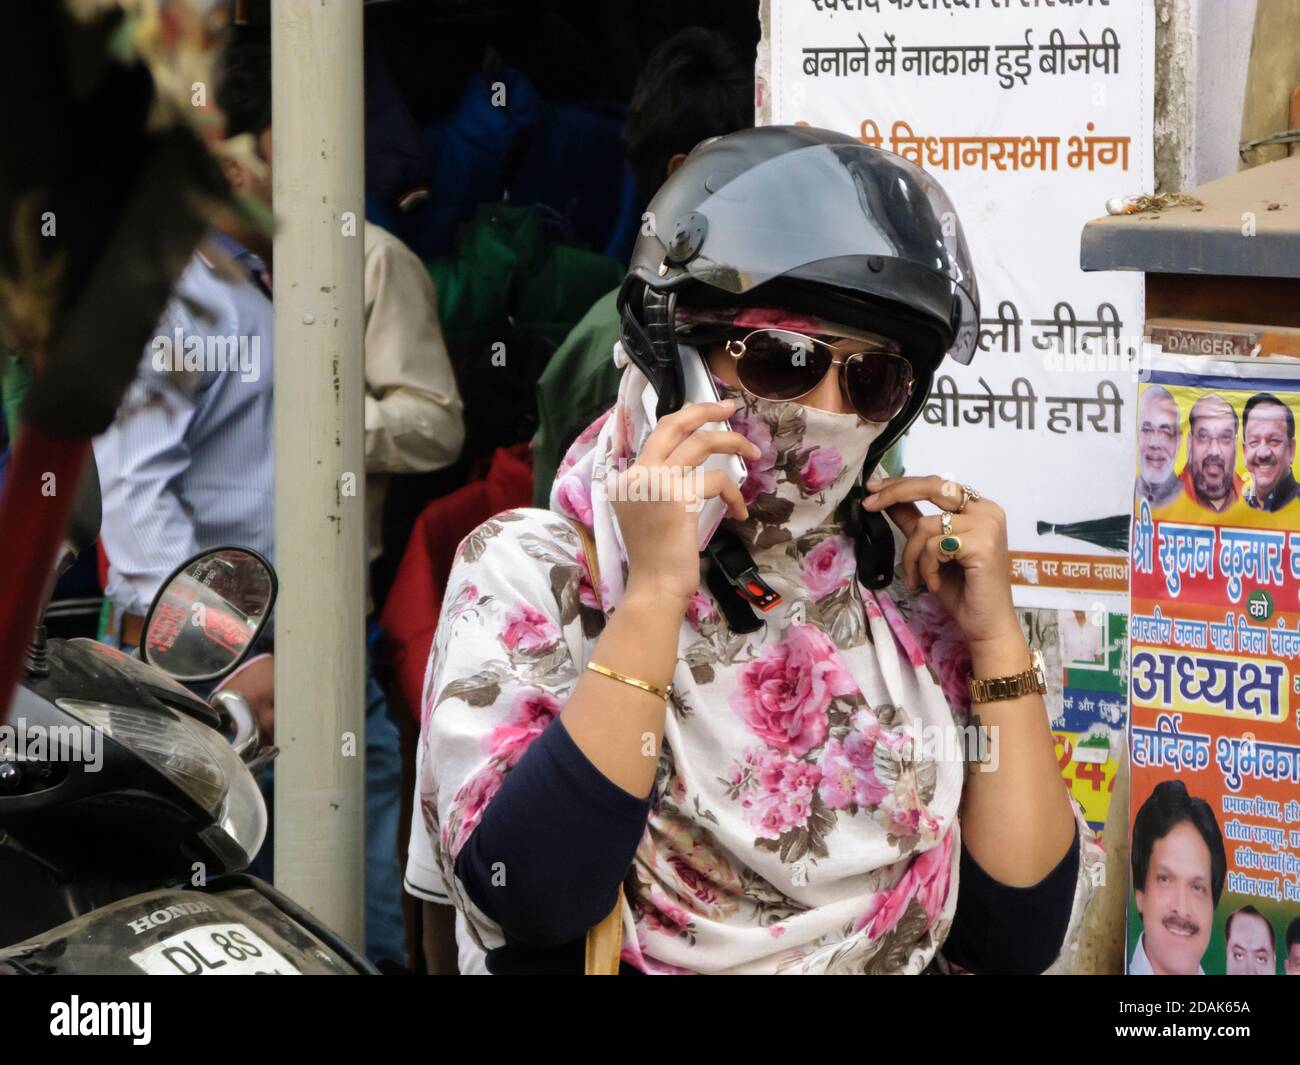 Inde, traiteur. Une jeune femme moderne est sur le point de monter sur un scooter. Montrant un tatouage sur le bras gauche, un smartphone mobile, des lunettes de soleil, un casque d'accident. Banque D'Images